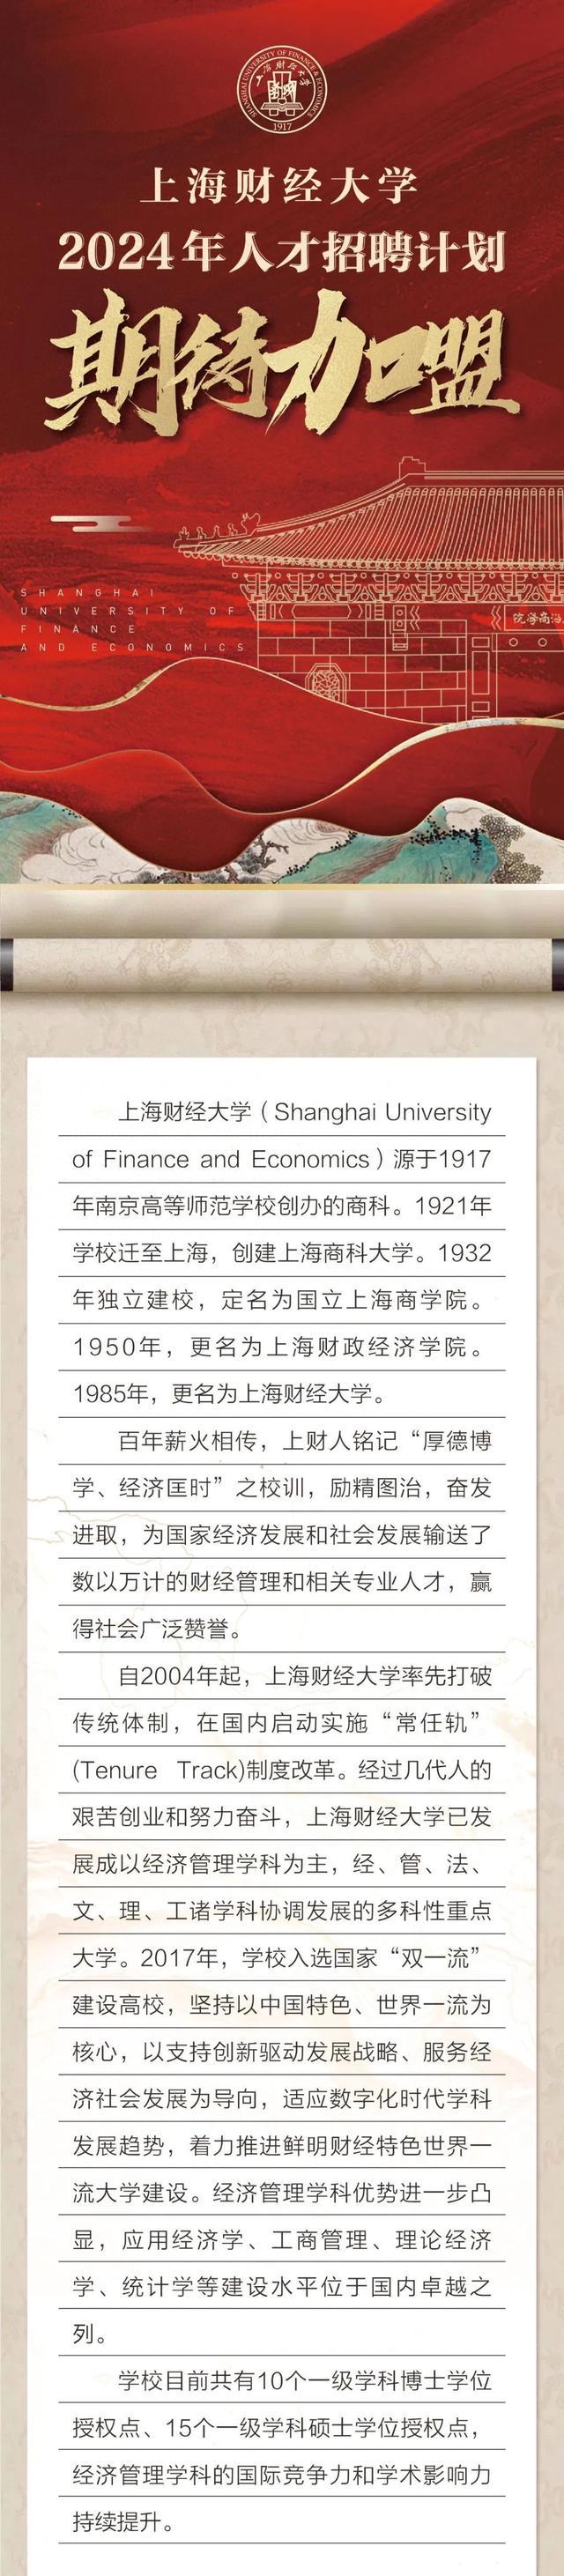 上海财经大学2024年人才招聘计划